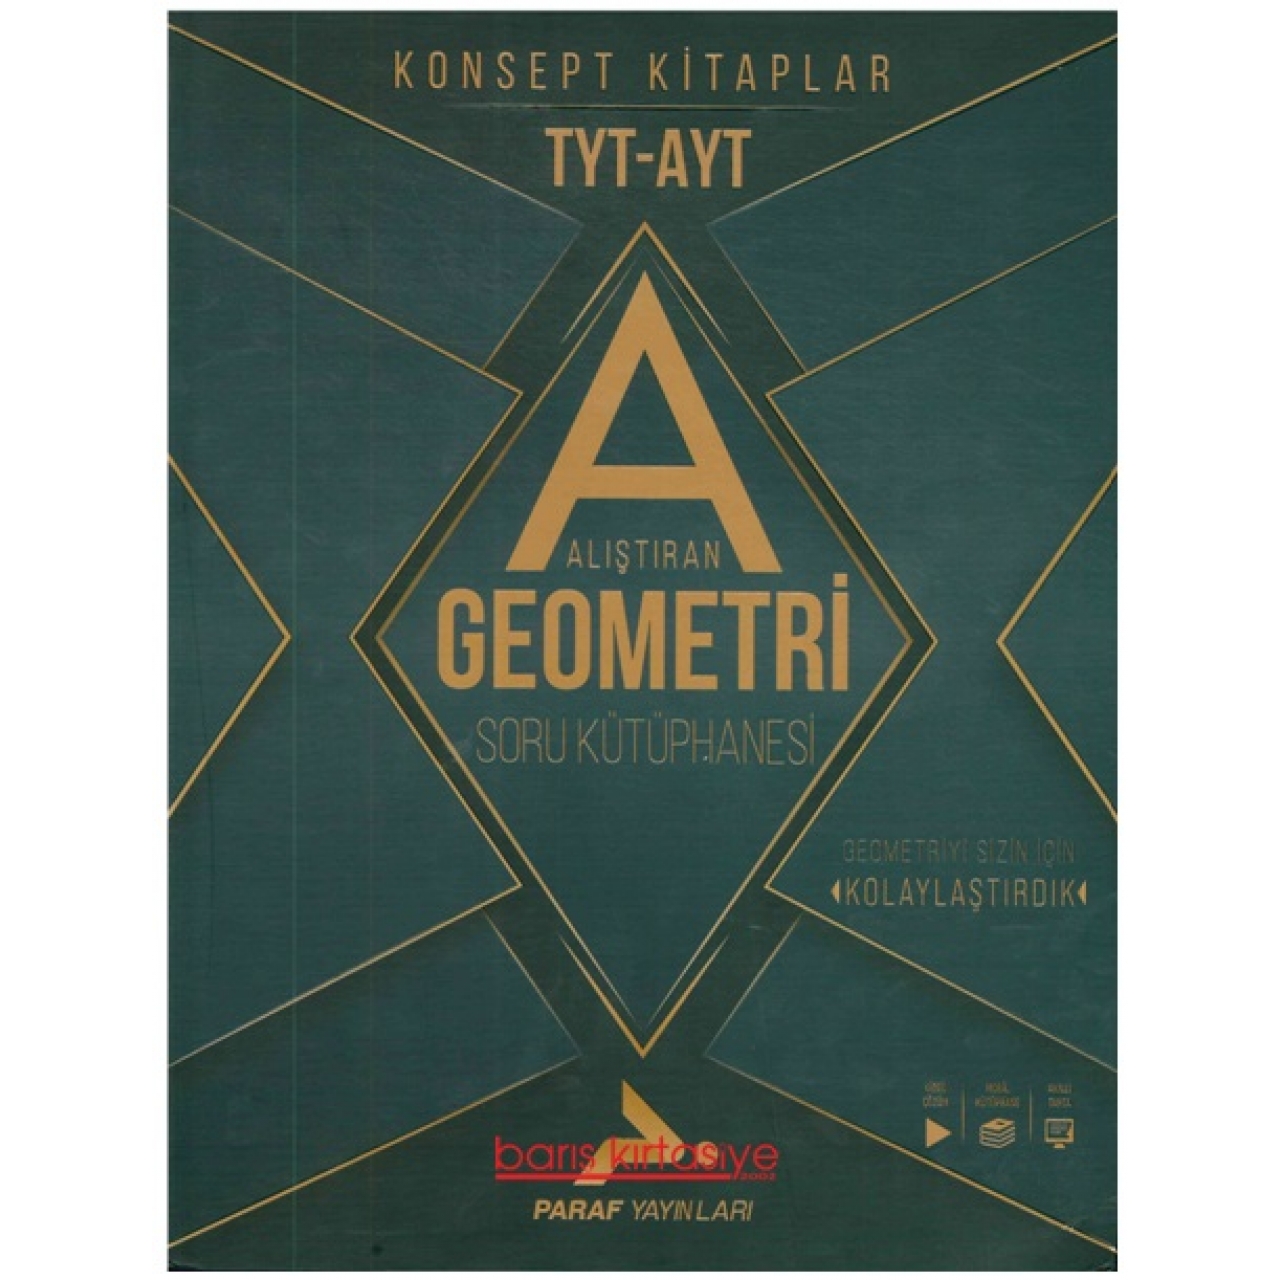 TYT-AYT Alıştıran Geometri Soru Kütüphanesi Paraf Yayınları